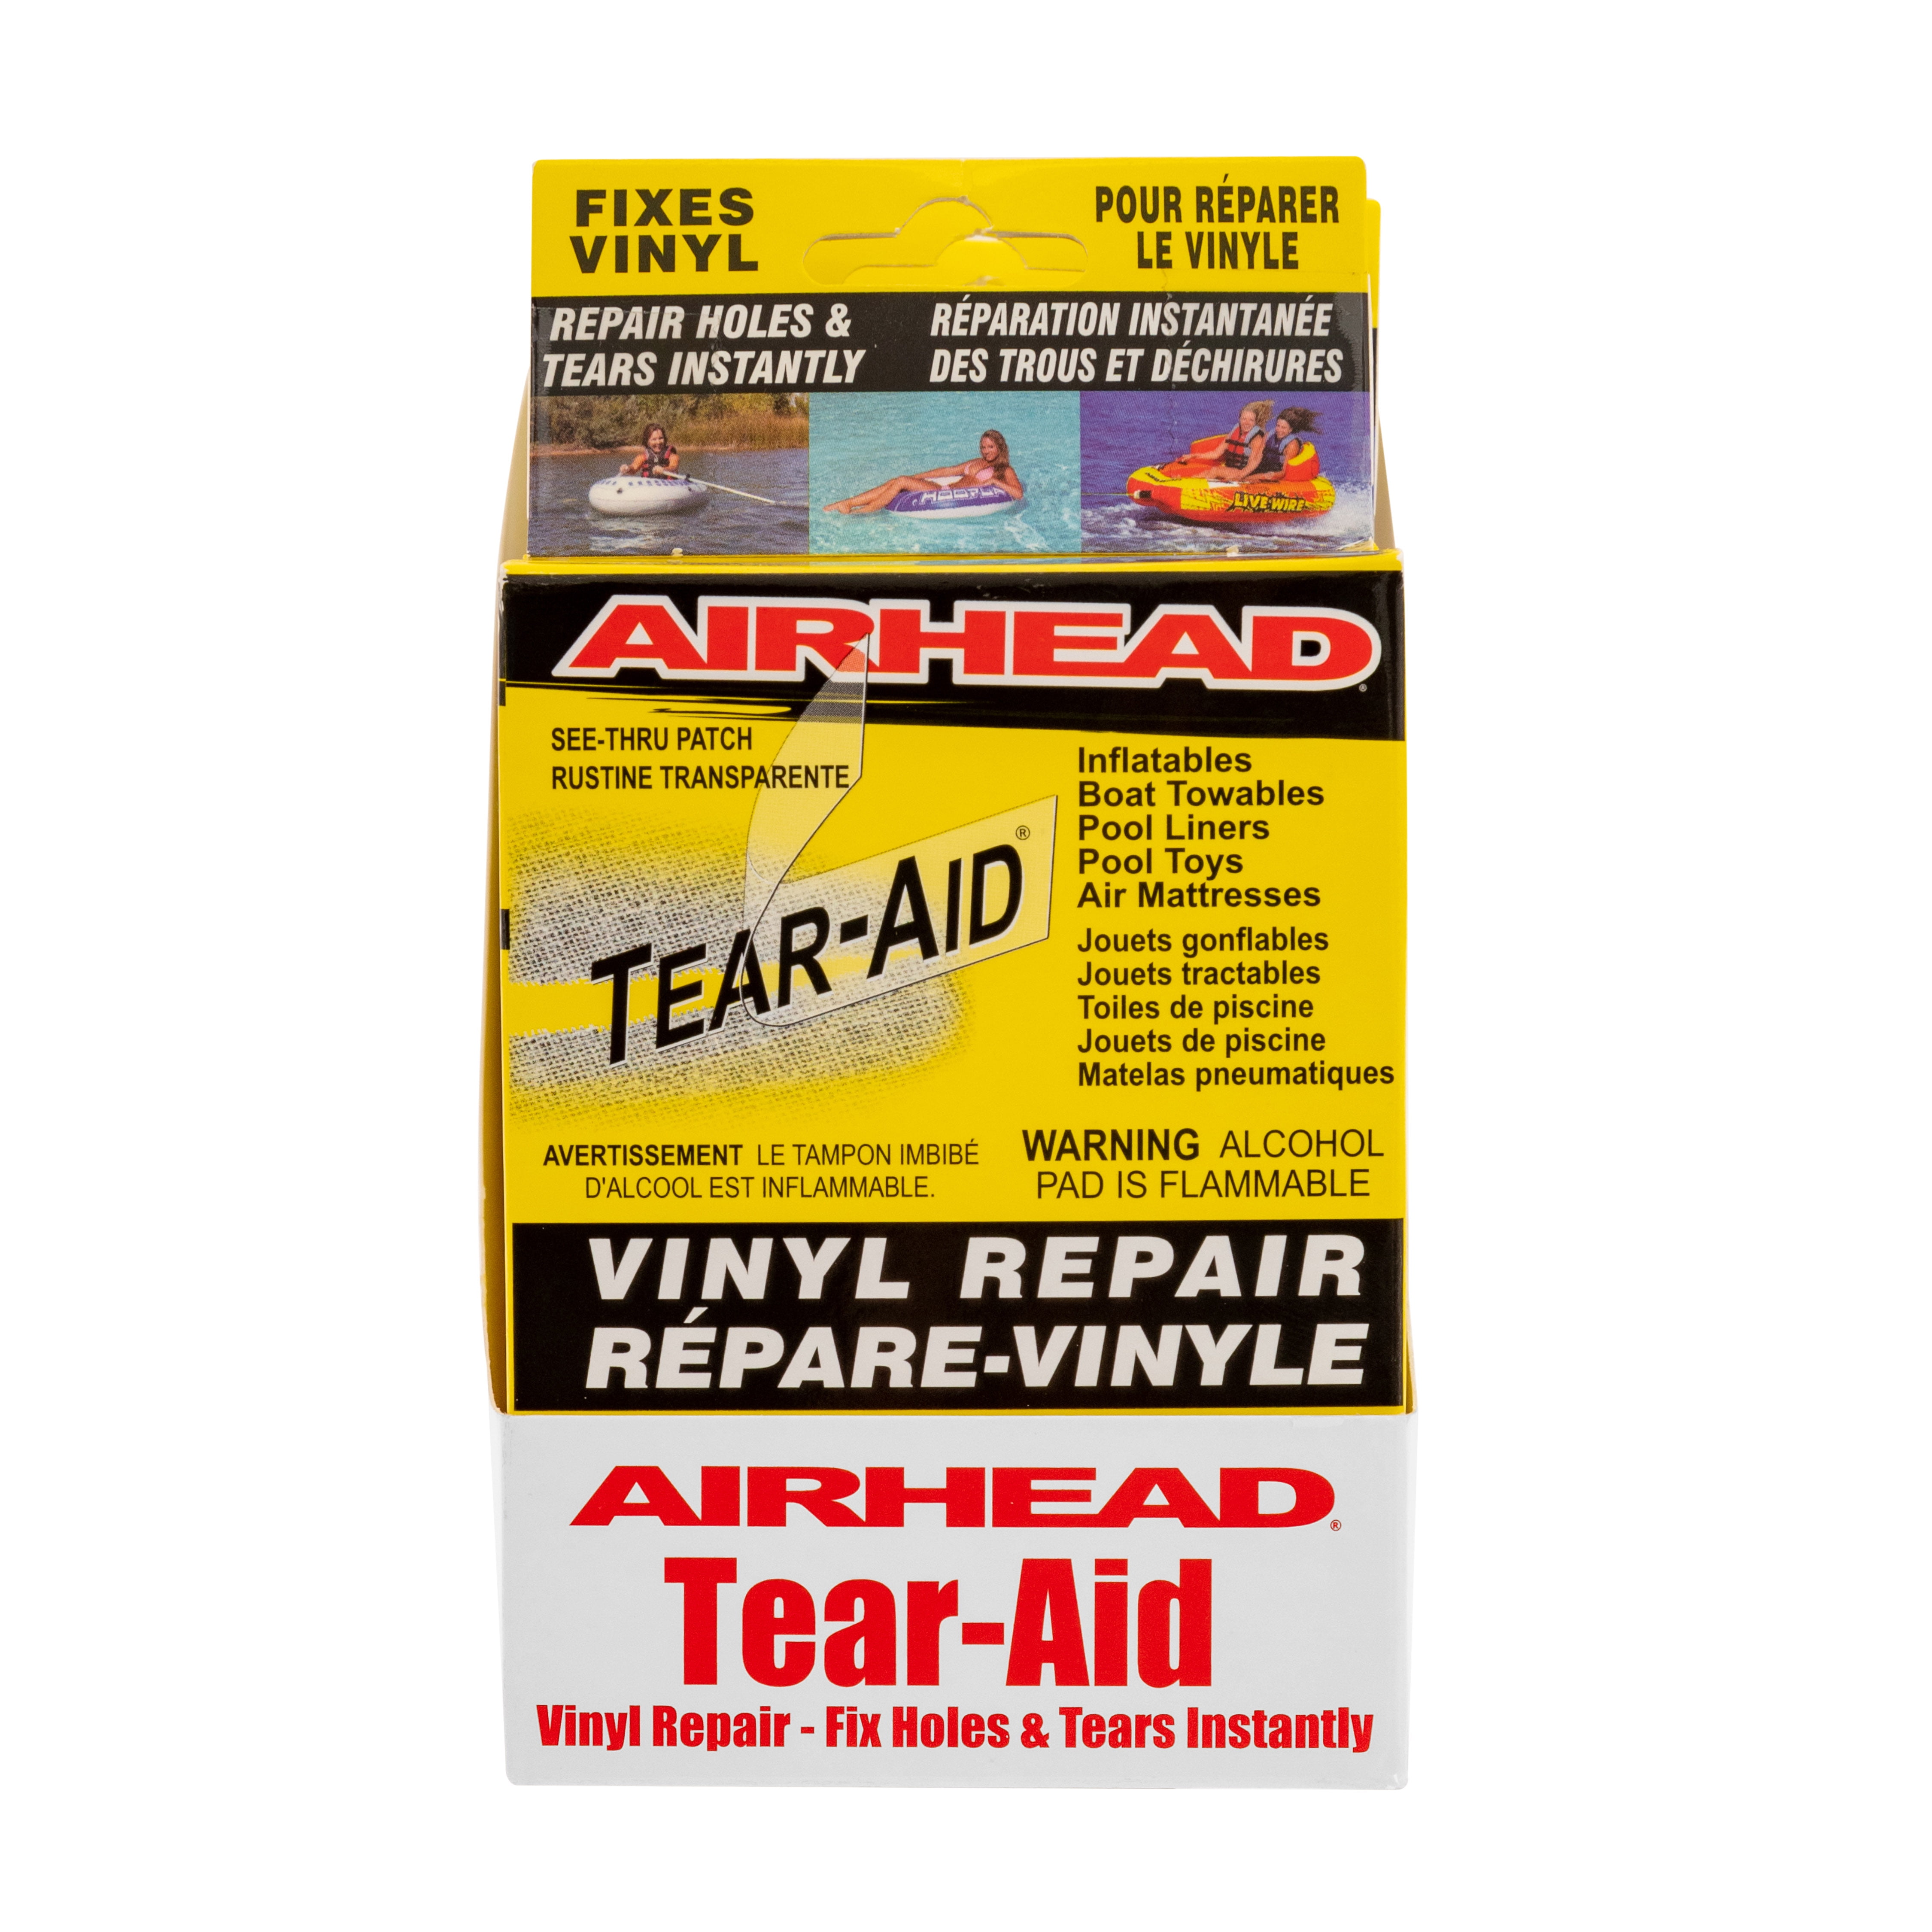 Airhead - Vinyl Repair Kit